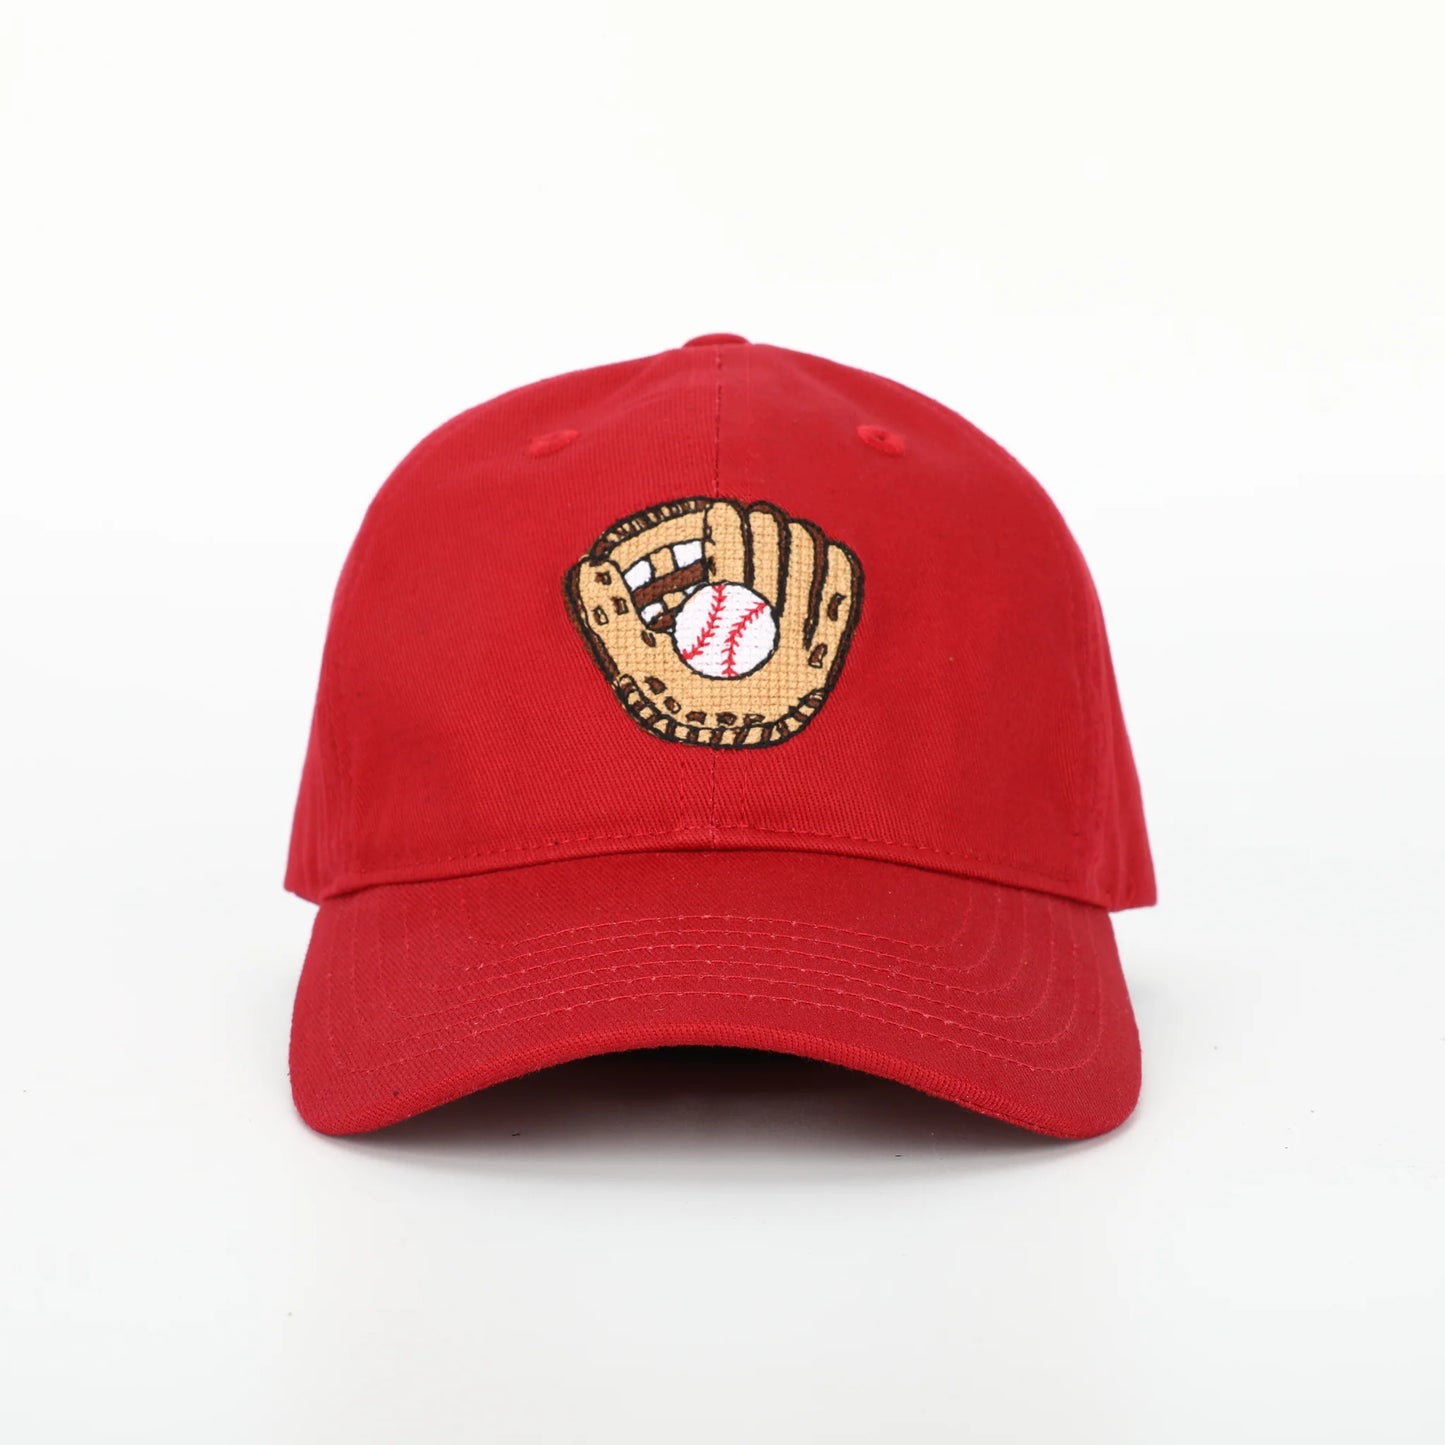 Baseball & Glove Hat